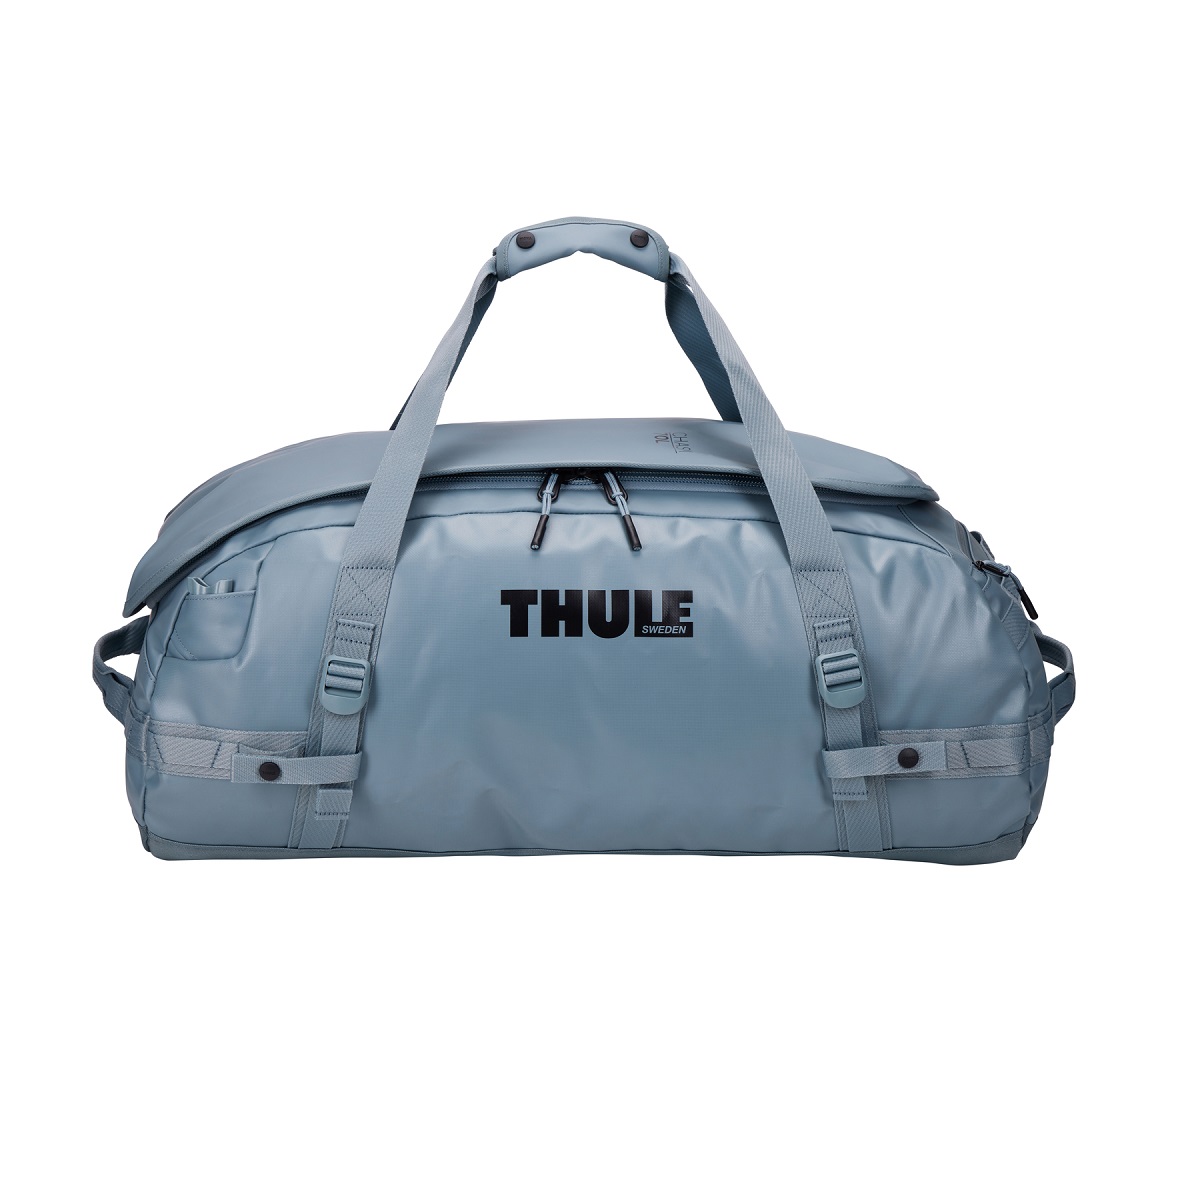 Sportska/putna torba i ruksak 2u1 Thule Chasm 70 L - sivoplava